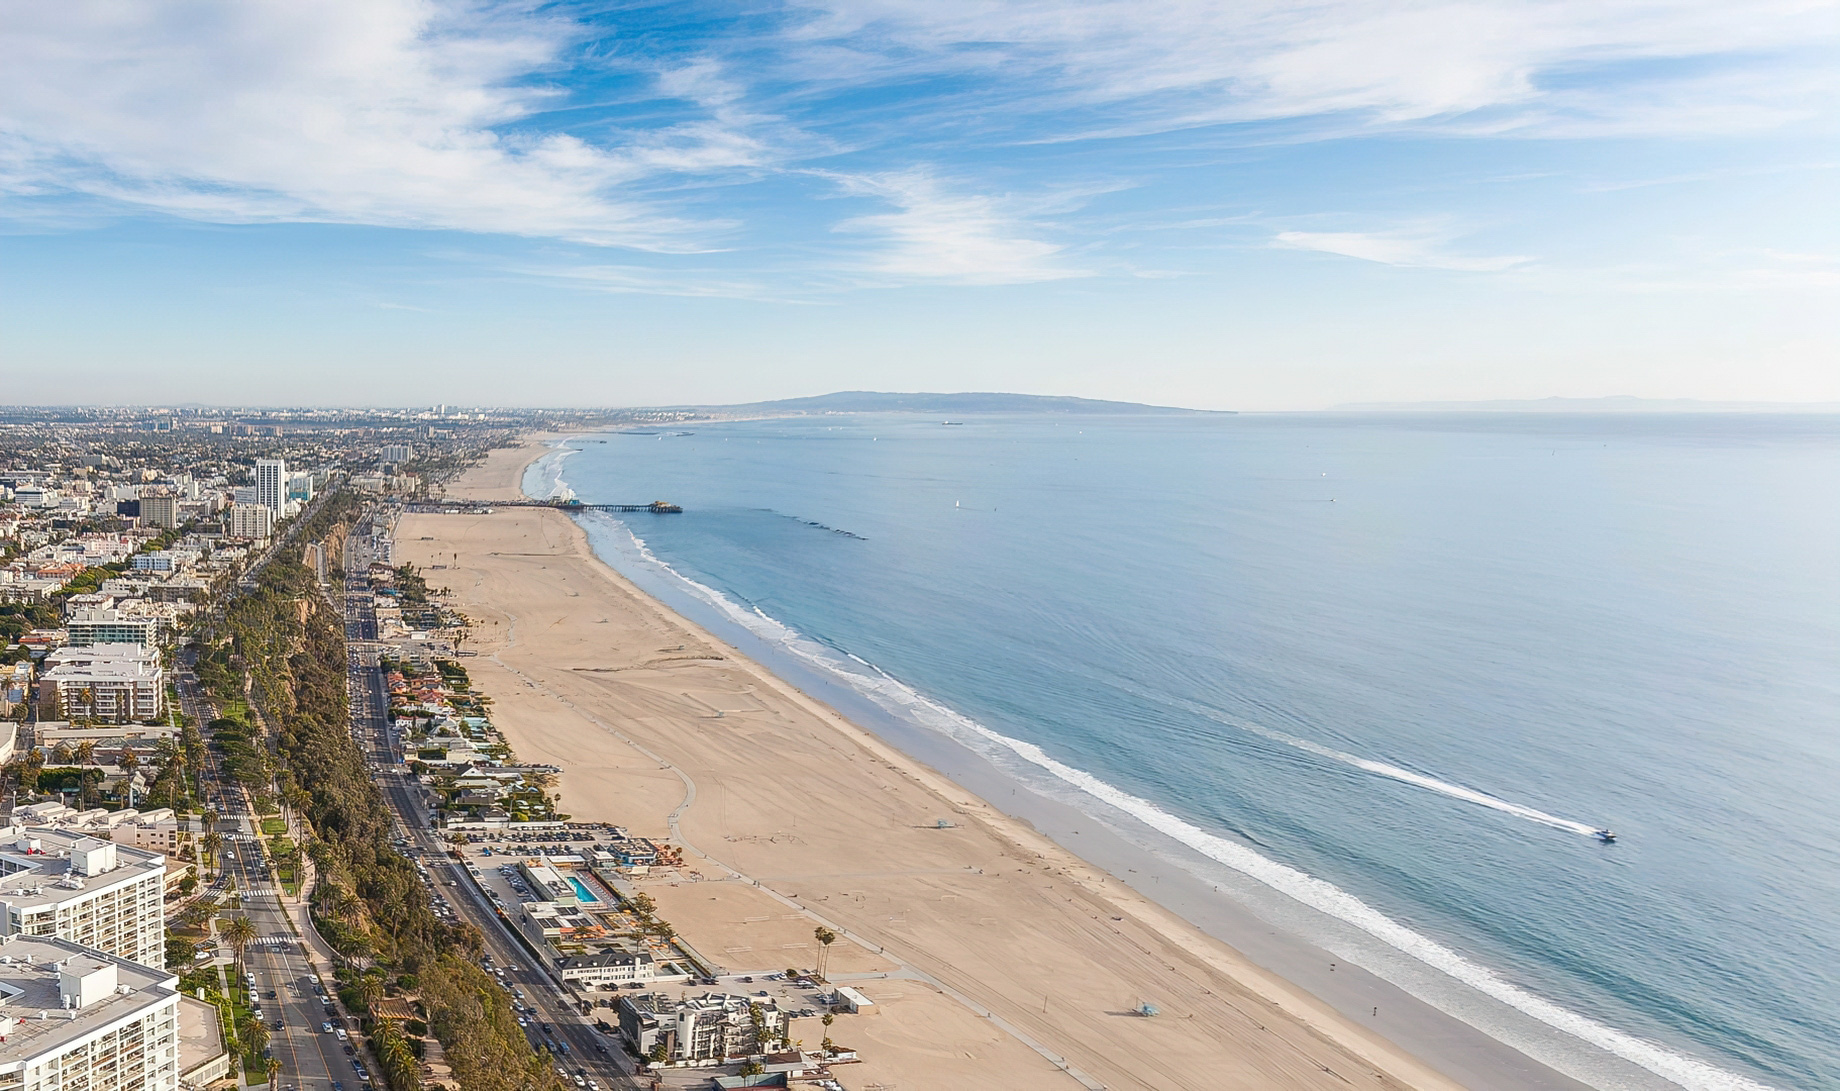 Viceroy Santa Monica Hotel – Santa Monica, CA, USA – Santa Monica Beach Aerial View